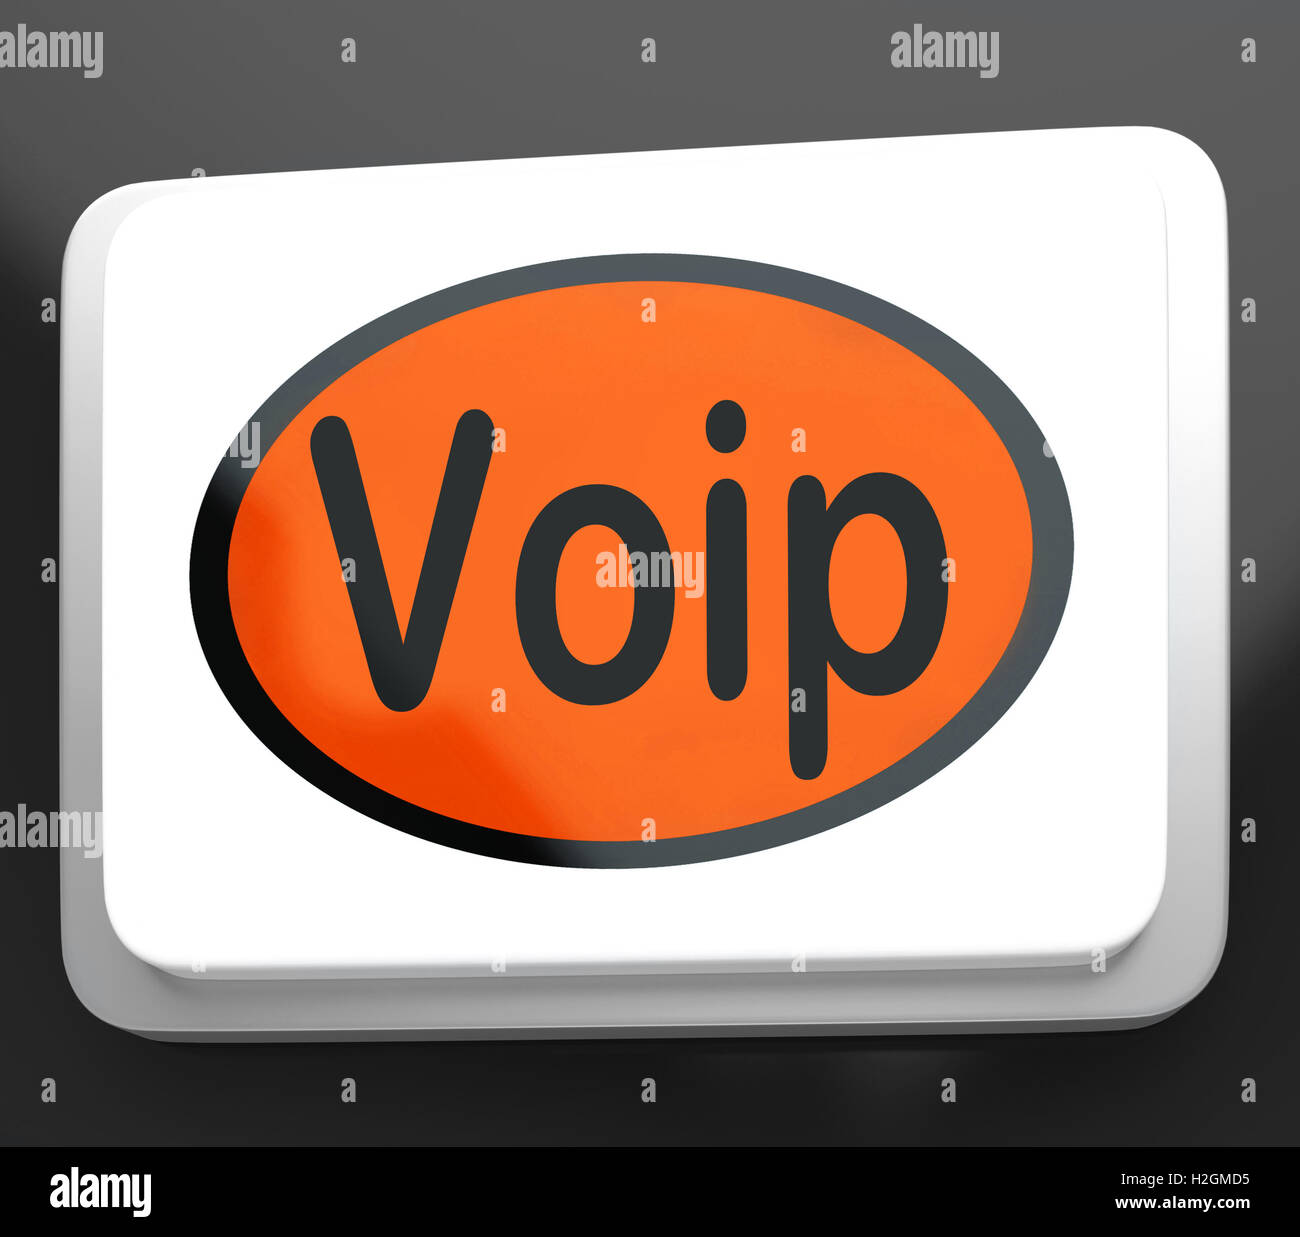 Pulsante Voip significa Voice Over Internet Protocol o tele a banda larga Foto Stock